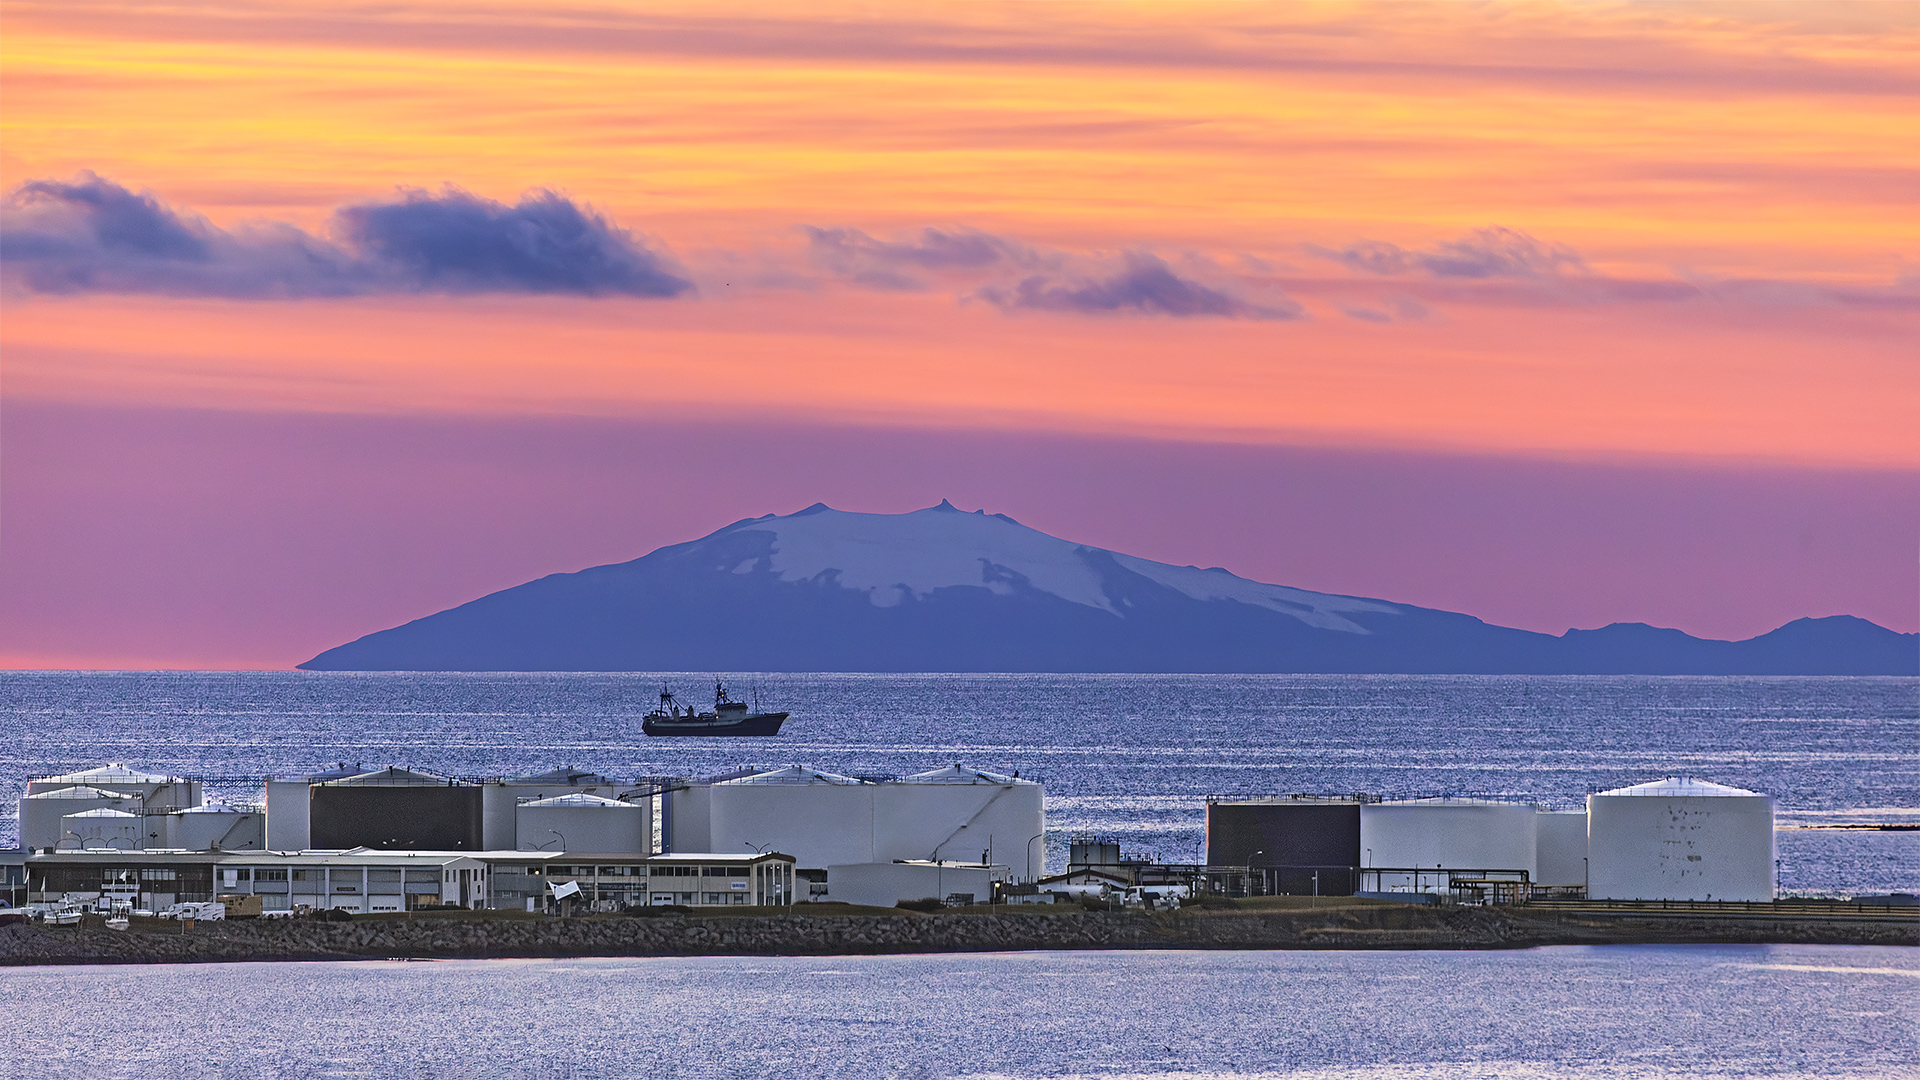 Fossile Energie versus Erdwärme. Mineralöllager vor dem Hintergrund von „Snæfellsnes“, der schneebedeckten Vulkanhalbinsel in Sichtweite.